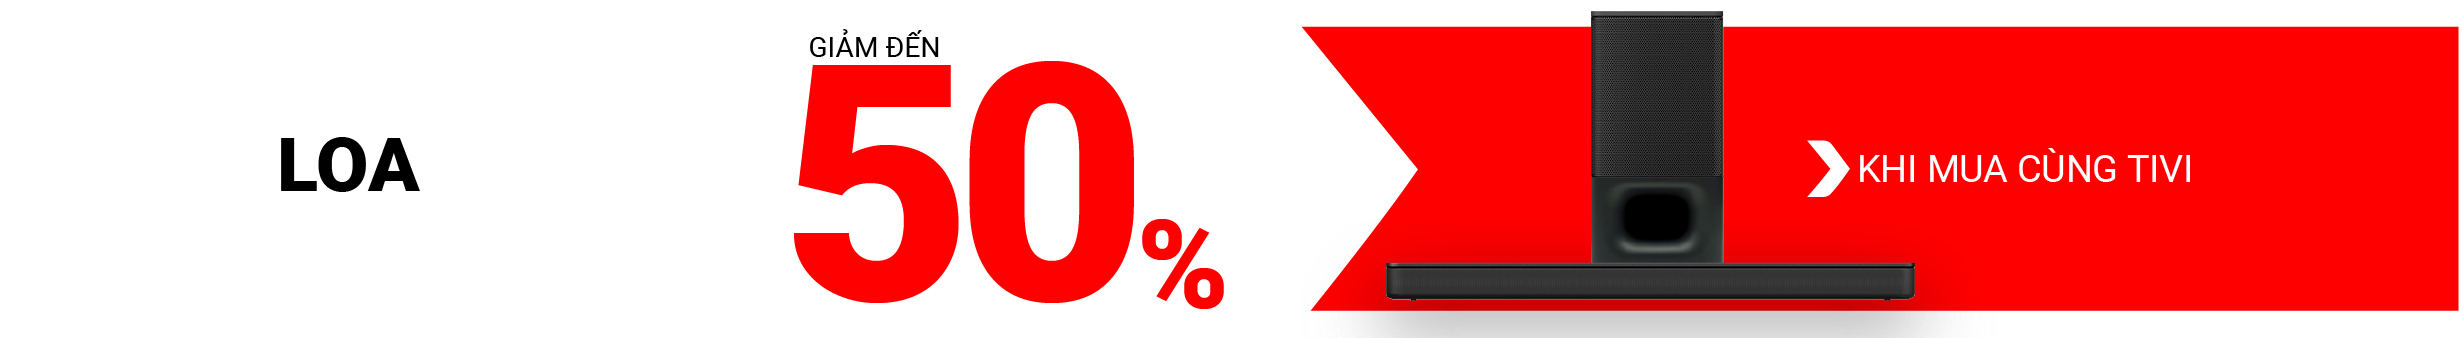 Loa%20gi%E1%BA%A3m%20%C4%91%E1%BA%BFn%2050%25